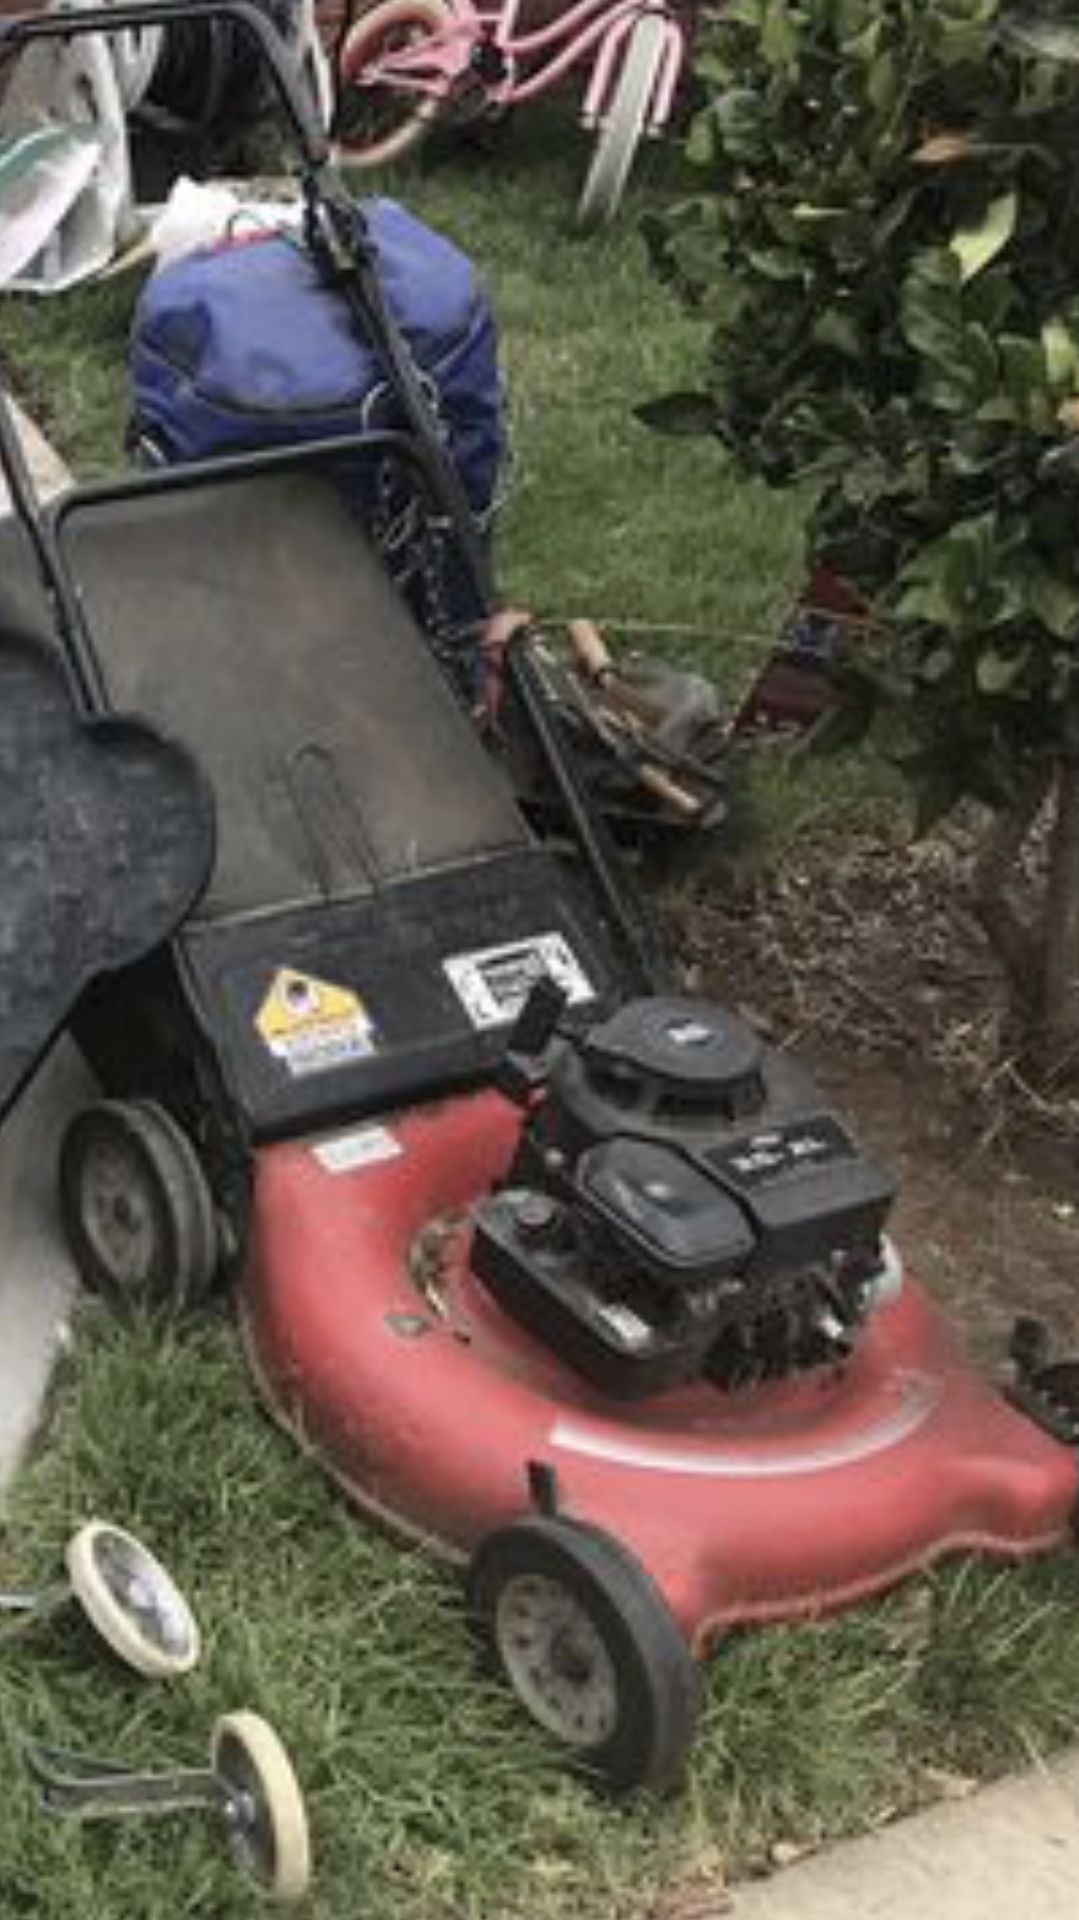 $50 obo lawn mower